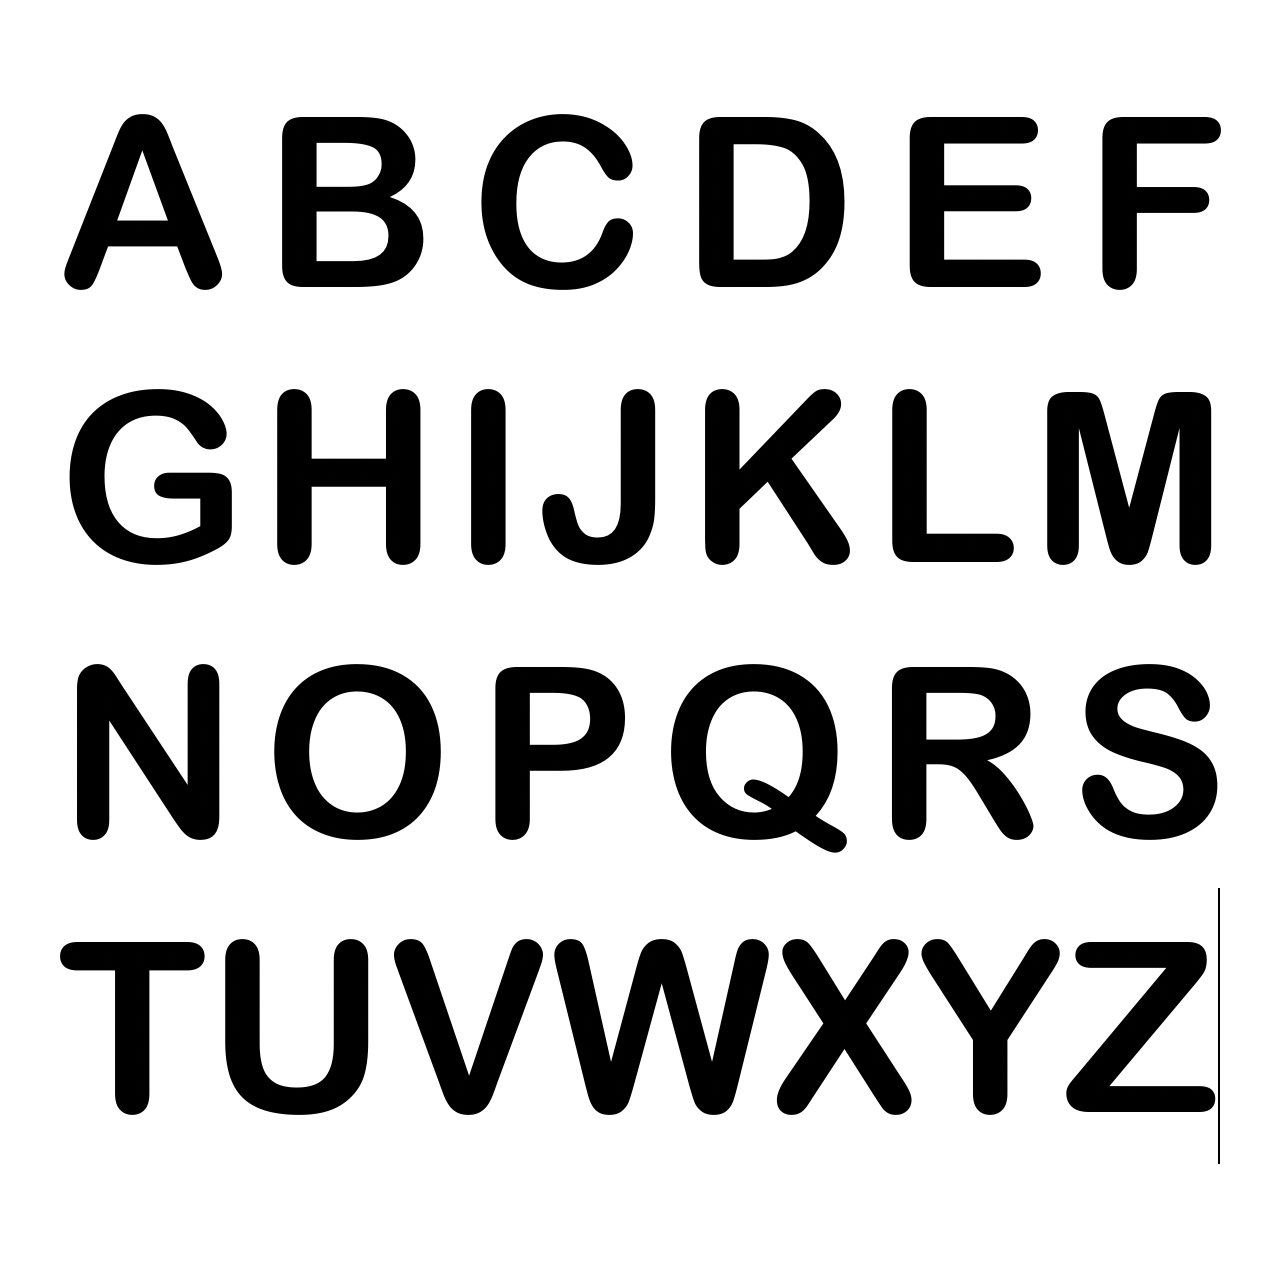 Alphabet cutters